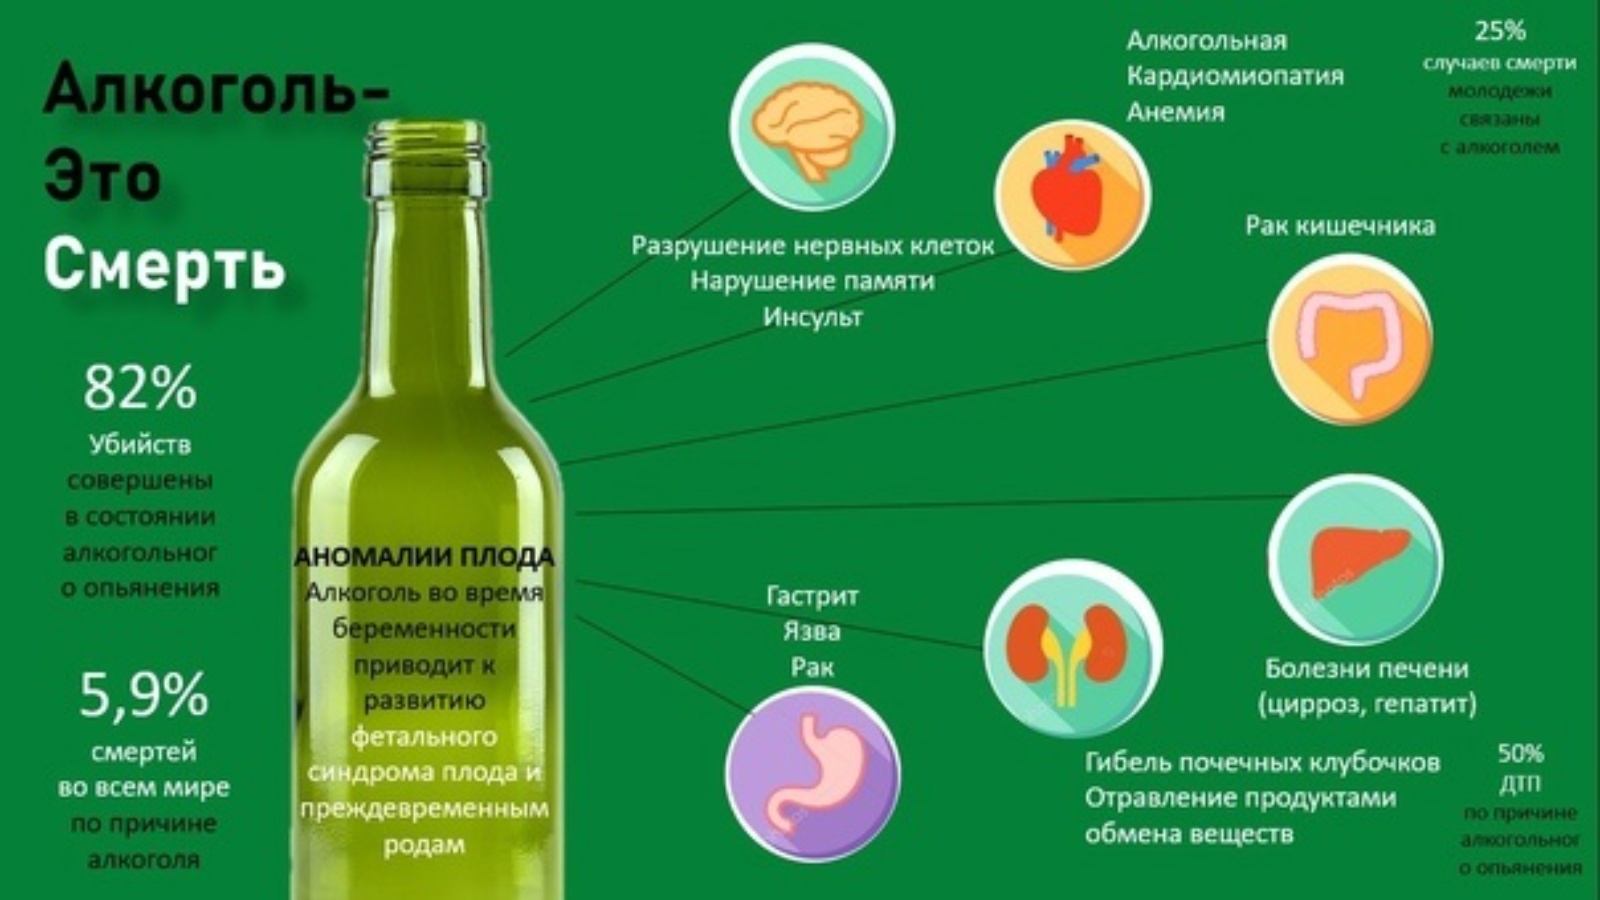 Реклама сидра может содержать информацию о витаминах. Вредные вещества в алкагод. Алкоголь вреден.